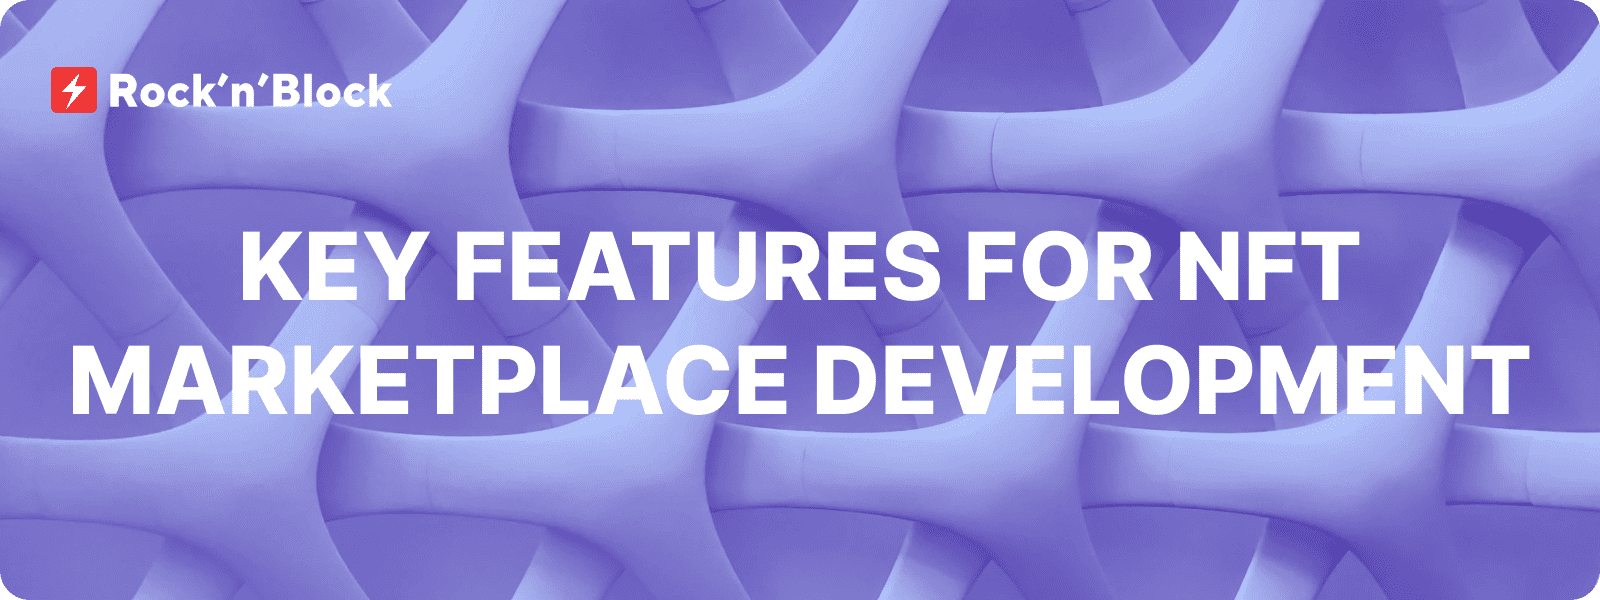 10 Core Features for NFT Marketplace Development